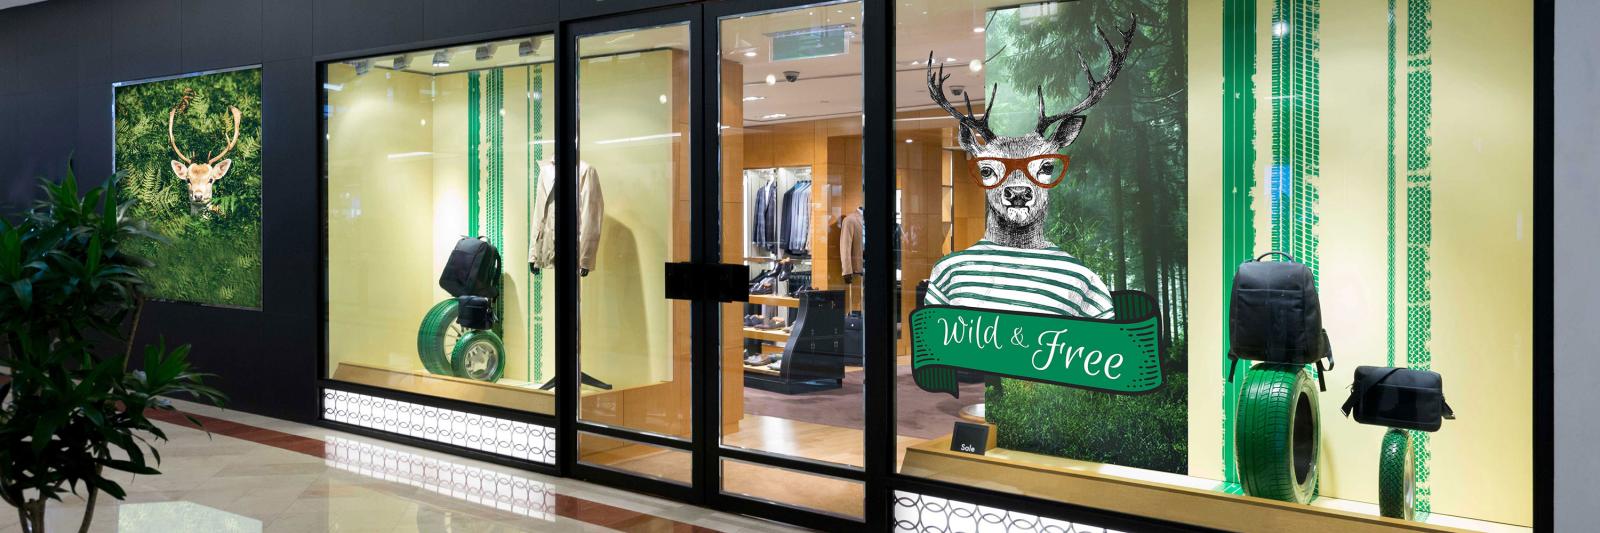 Druckmedien selbstklebend für Werbeschilder - Schaufenster Boutique mit grüner Werbung und Hirsch mit Brille und T-Shirt